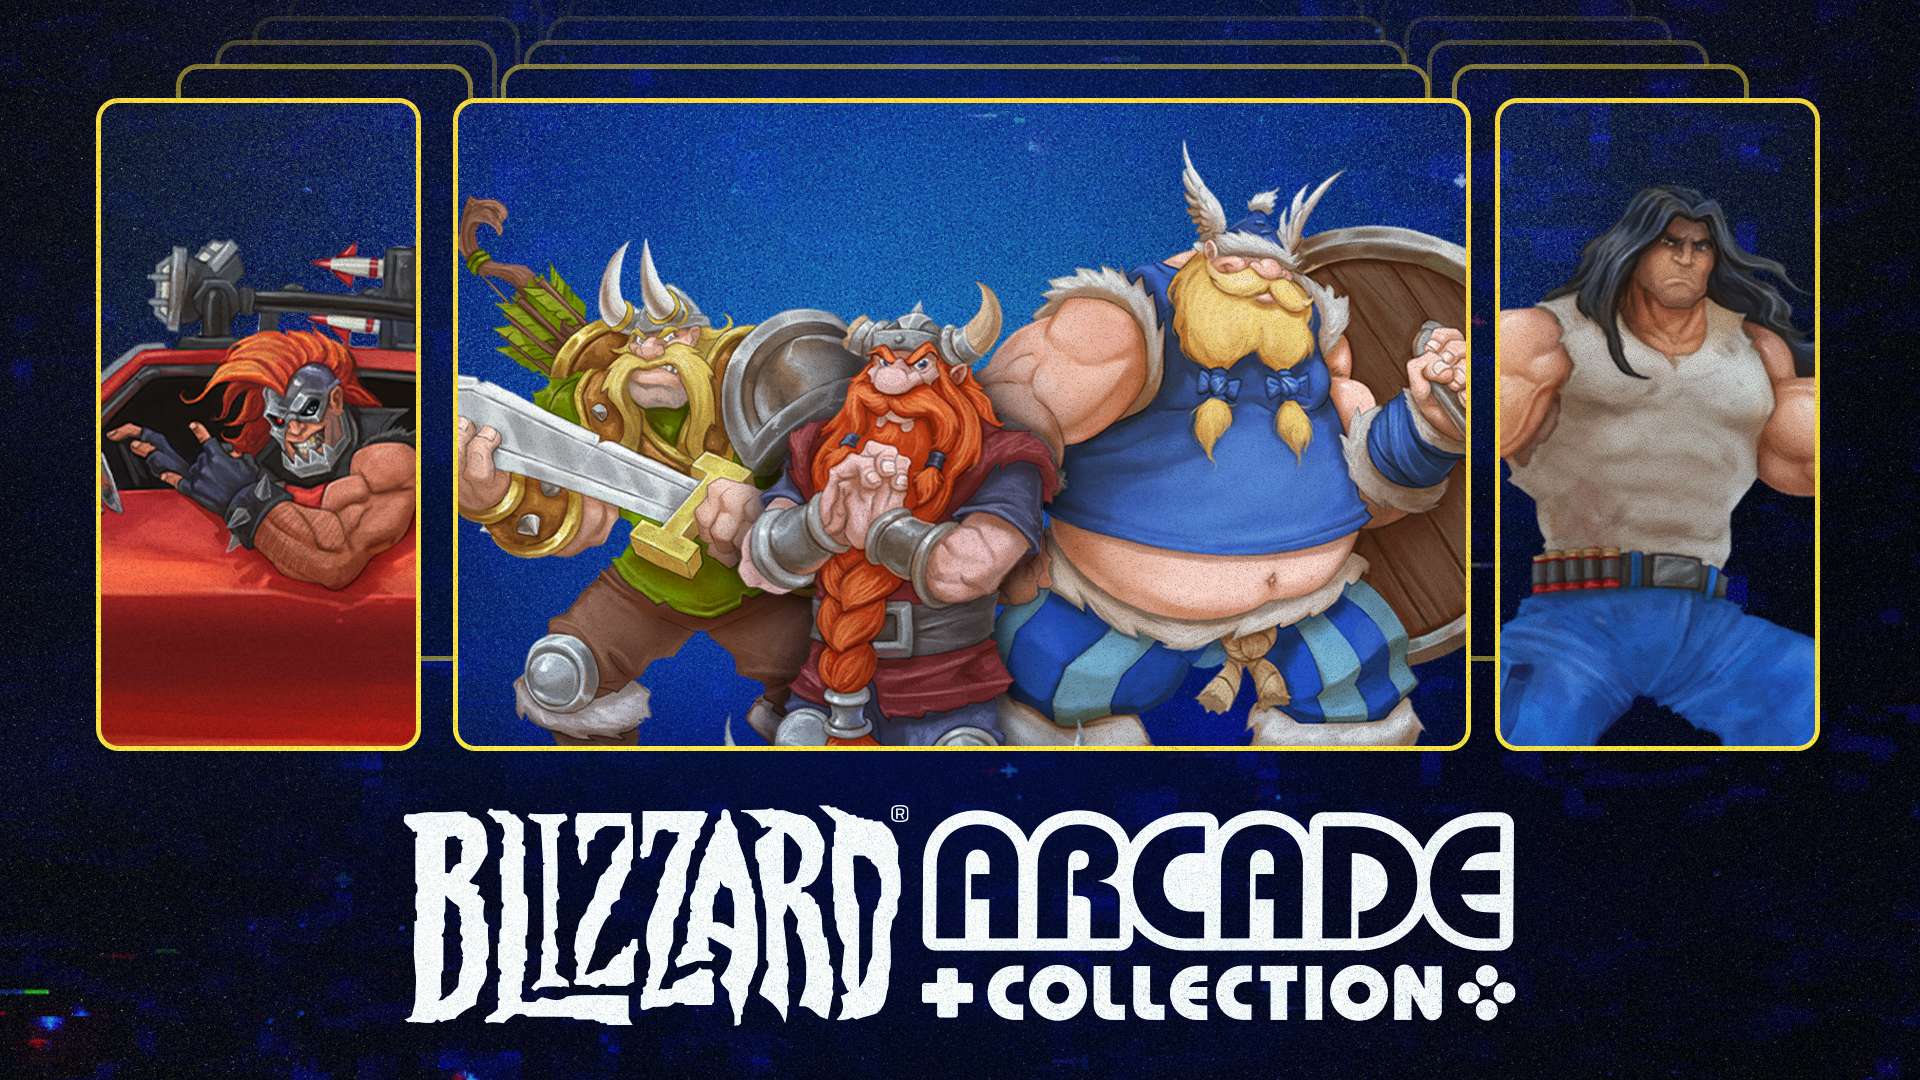 Blizzard® Arcade Collection sube de nivel con dos juegos nuevos y nuevas funcionalidades